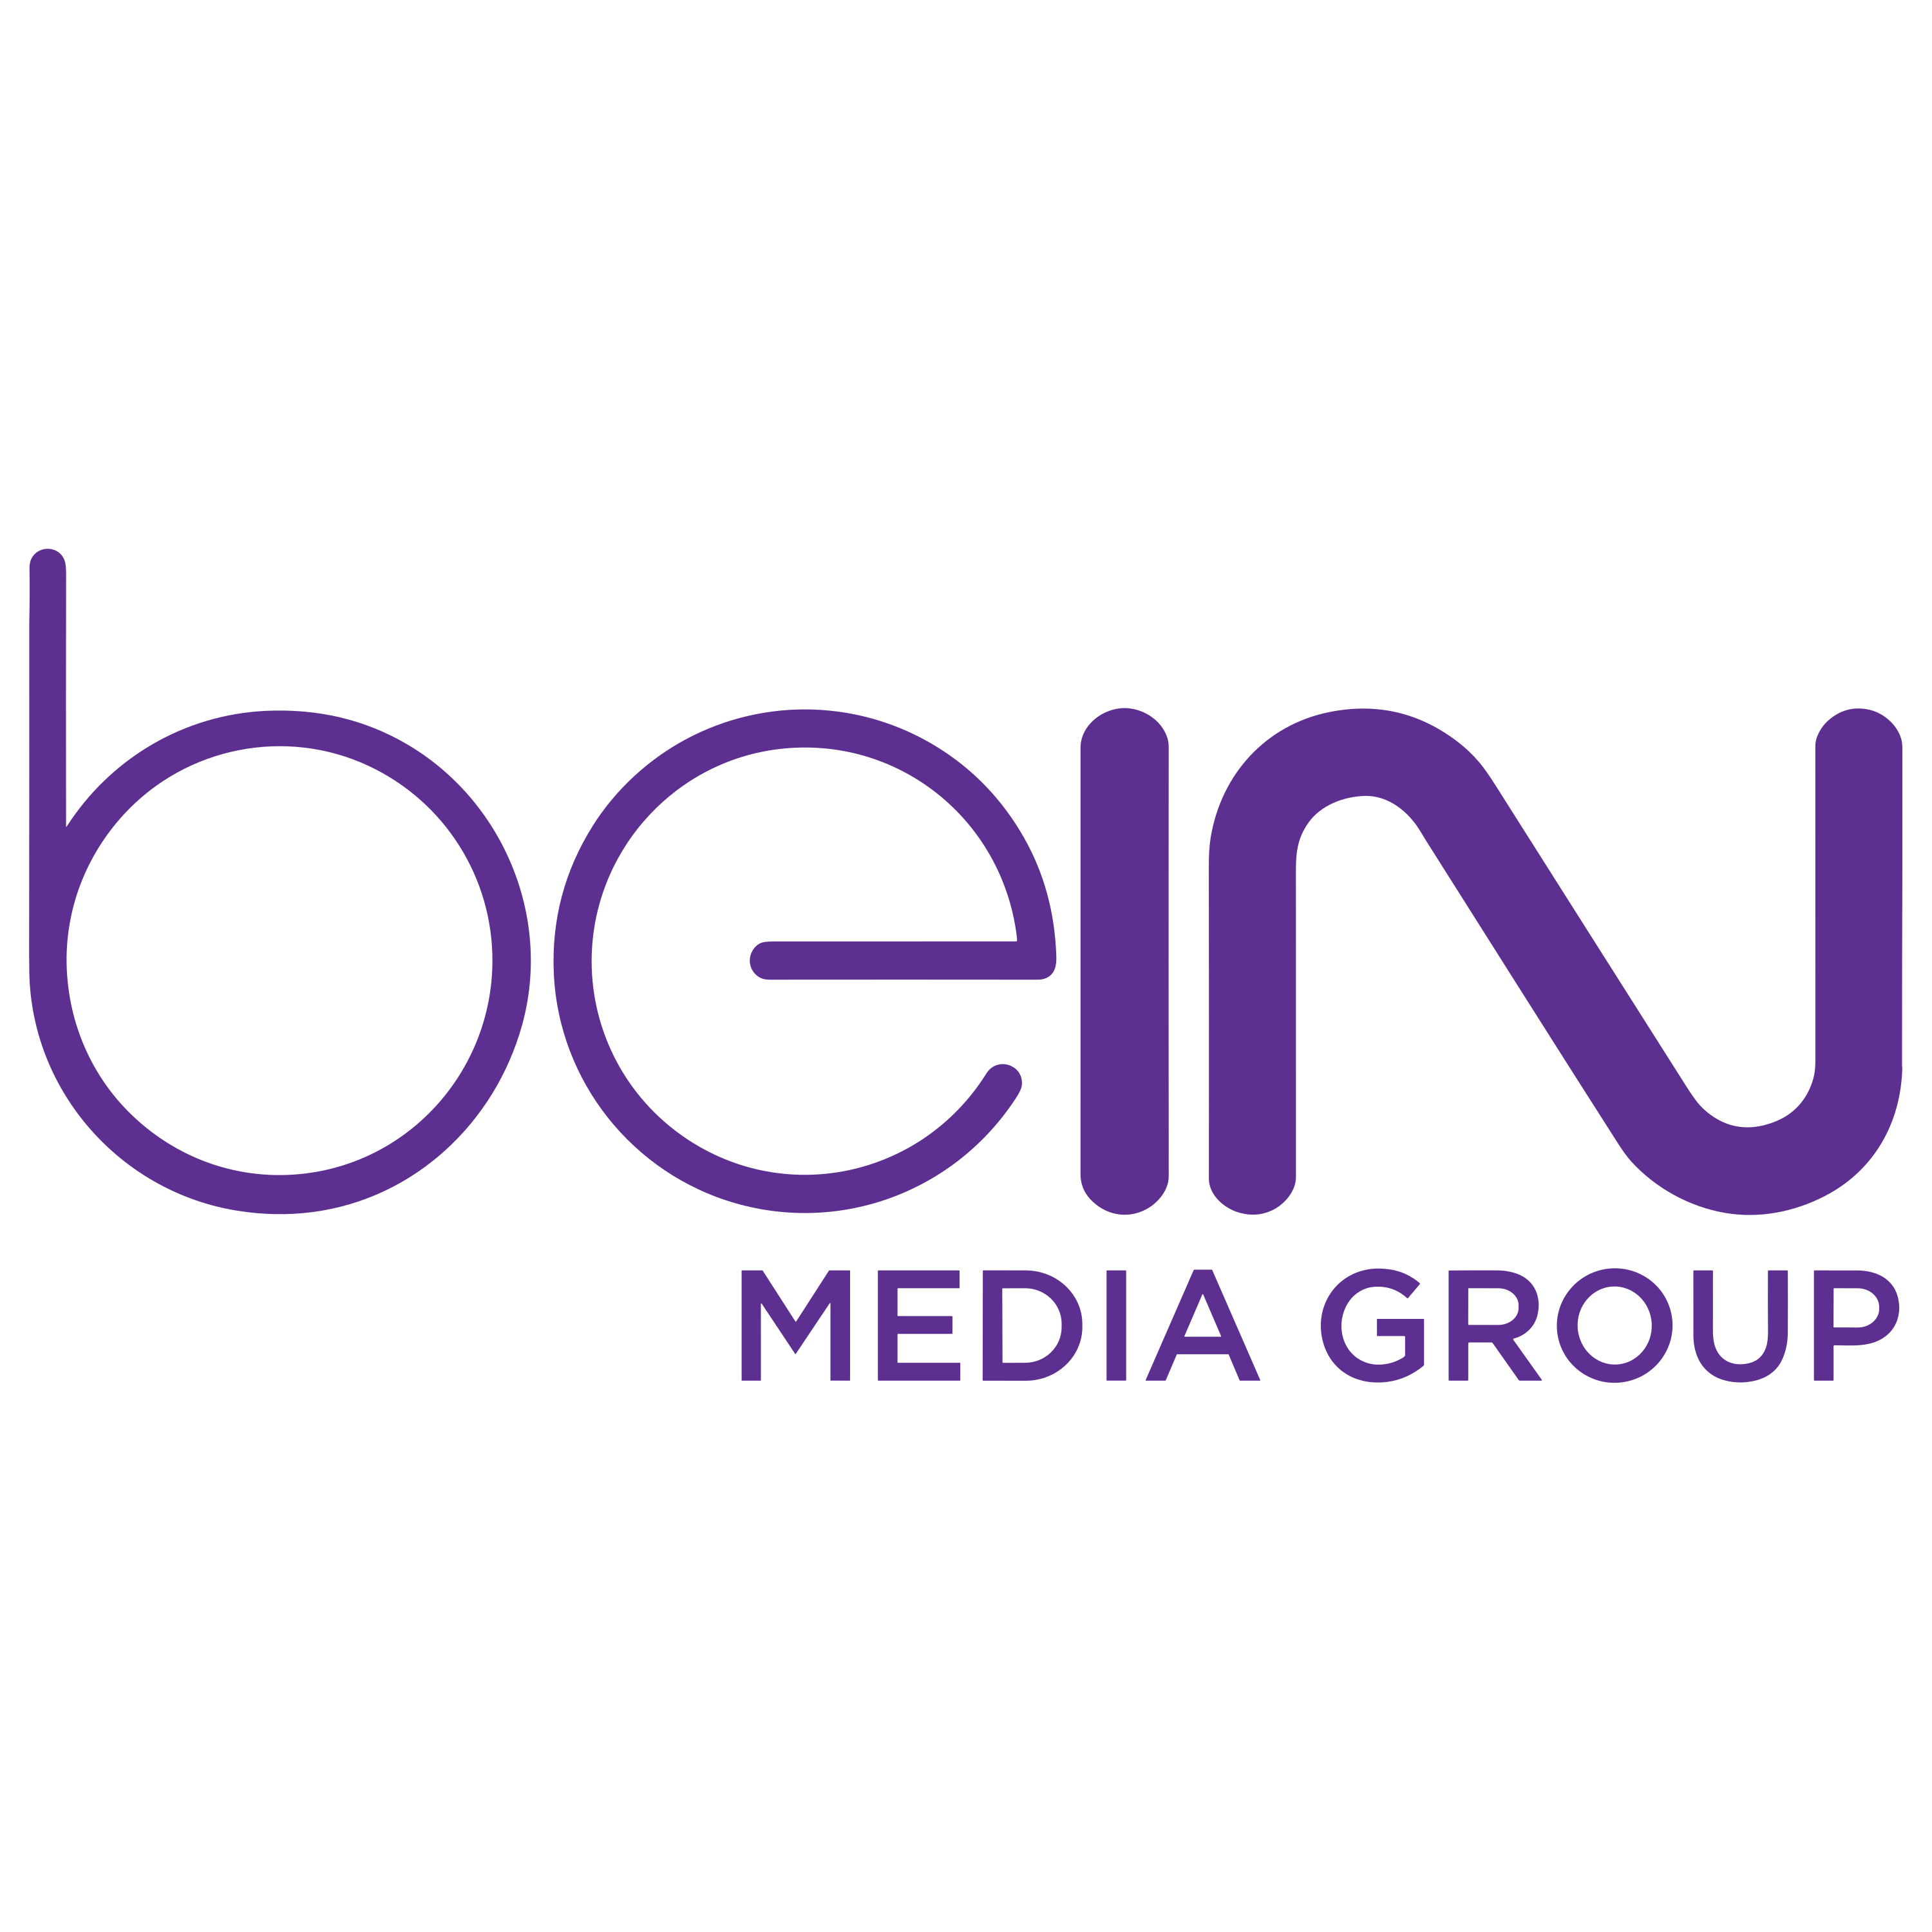 Bein Mediagroup Logo  Transparent Image